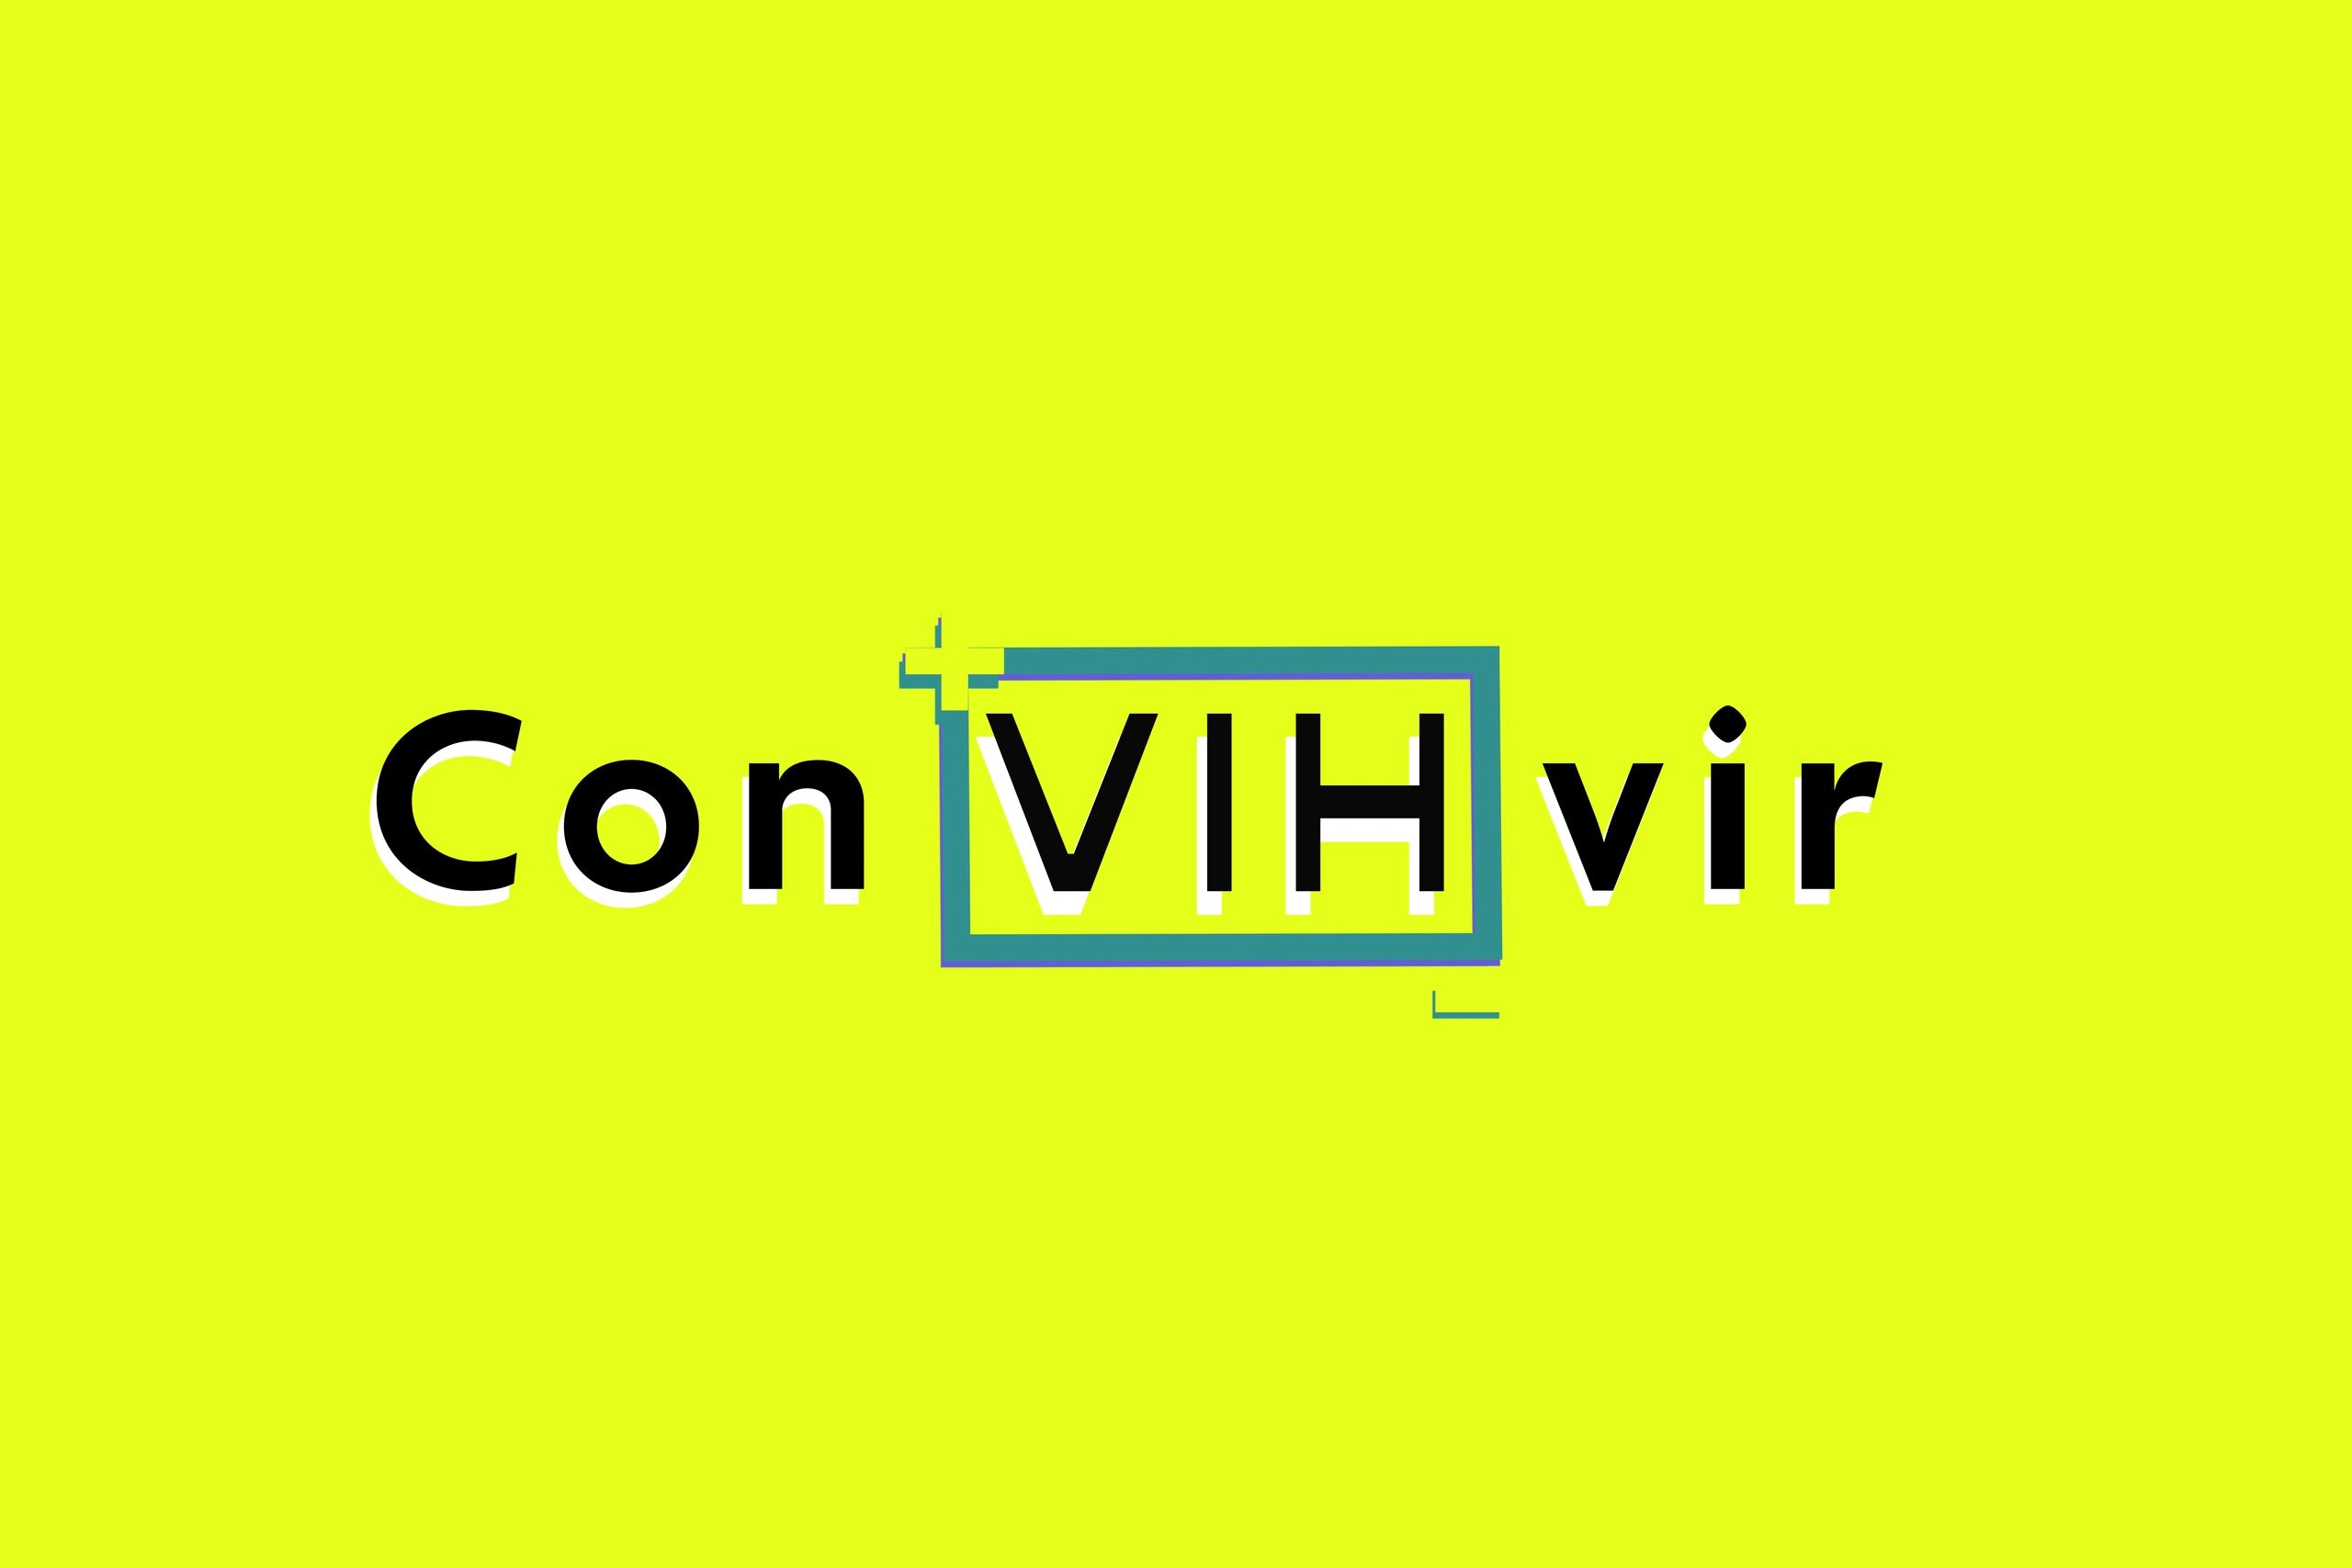 (c) Convihvir.com